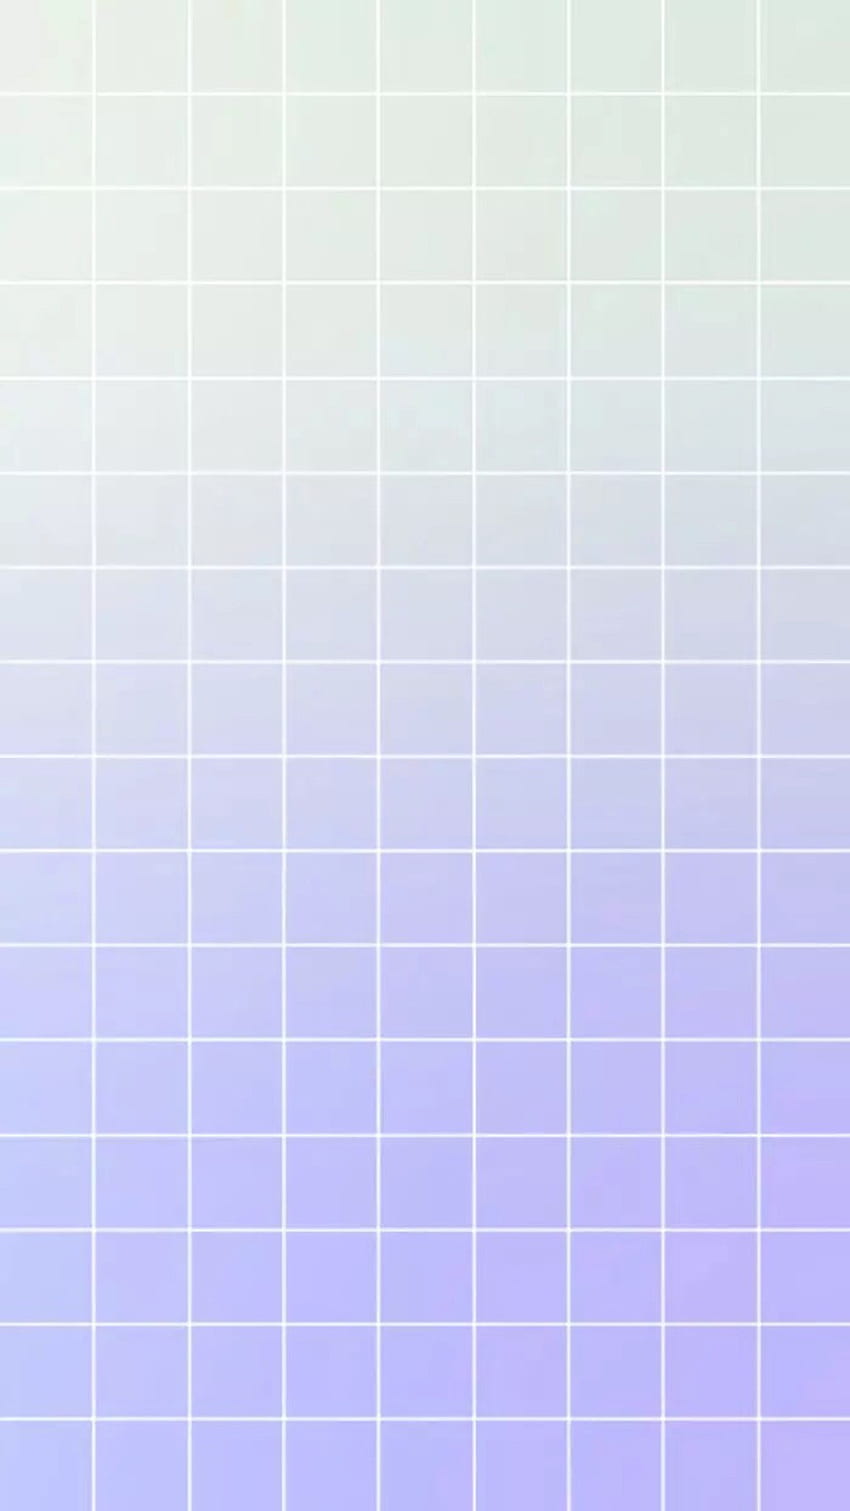 Sở hữu Pastel Color iPhone Grid sẽ giúp bạn trở nên trẻ trung và hiện đại hơn. Với các ô vuông màu pastel tươi sáng, mọi người nhìn vào điện thoại của bạn sẽ cảm thấy thích thú và đánh giá cao phong cách của bạn. Translation: Owning the Pastel Color iPhone Grid will make you more youthful and trendy. With bright pastel squares, people will be delighted and appreciate your style when looking at your phone.